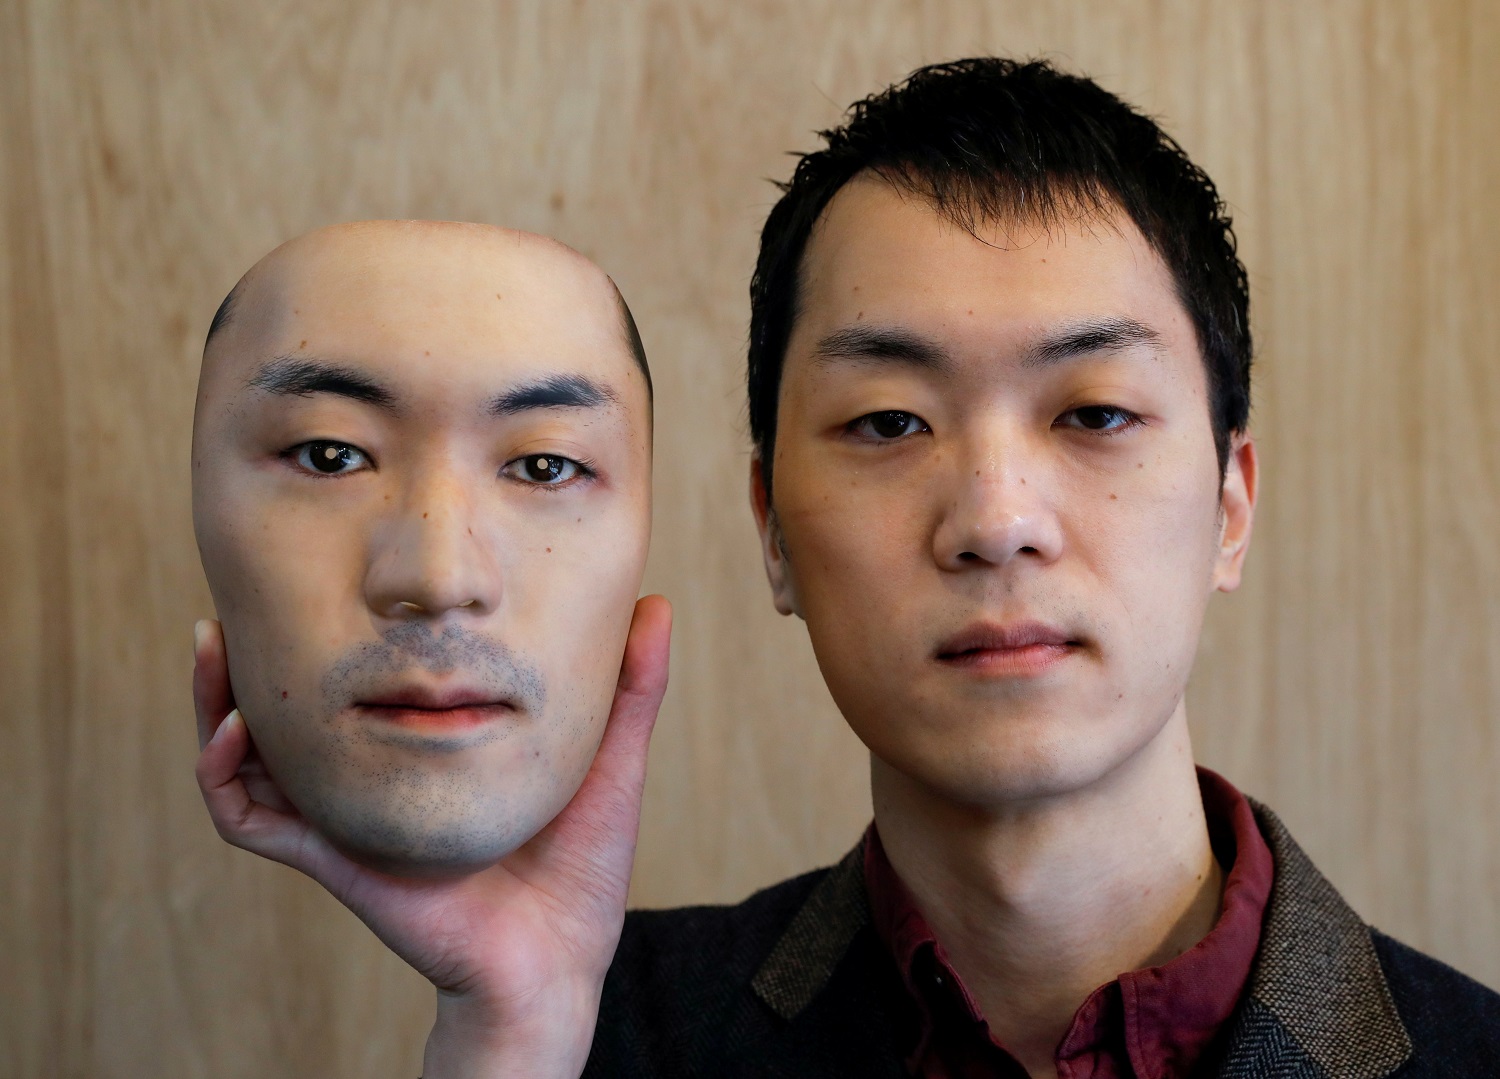 Usar la cara de otra persona: Este japonés vende máscaras hiperrealistas con rostros de extraños